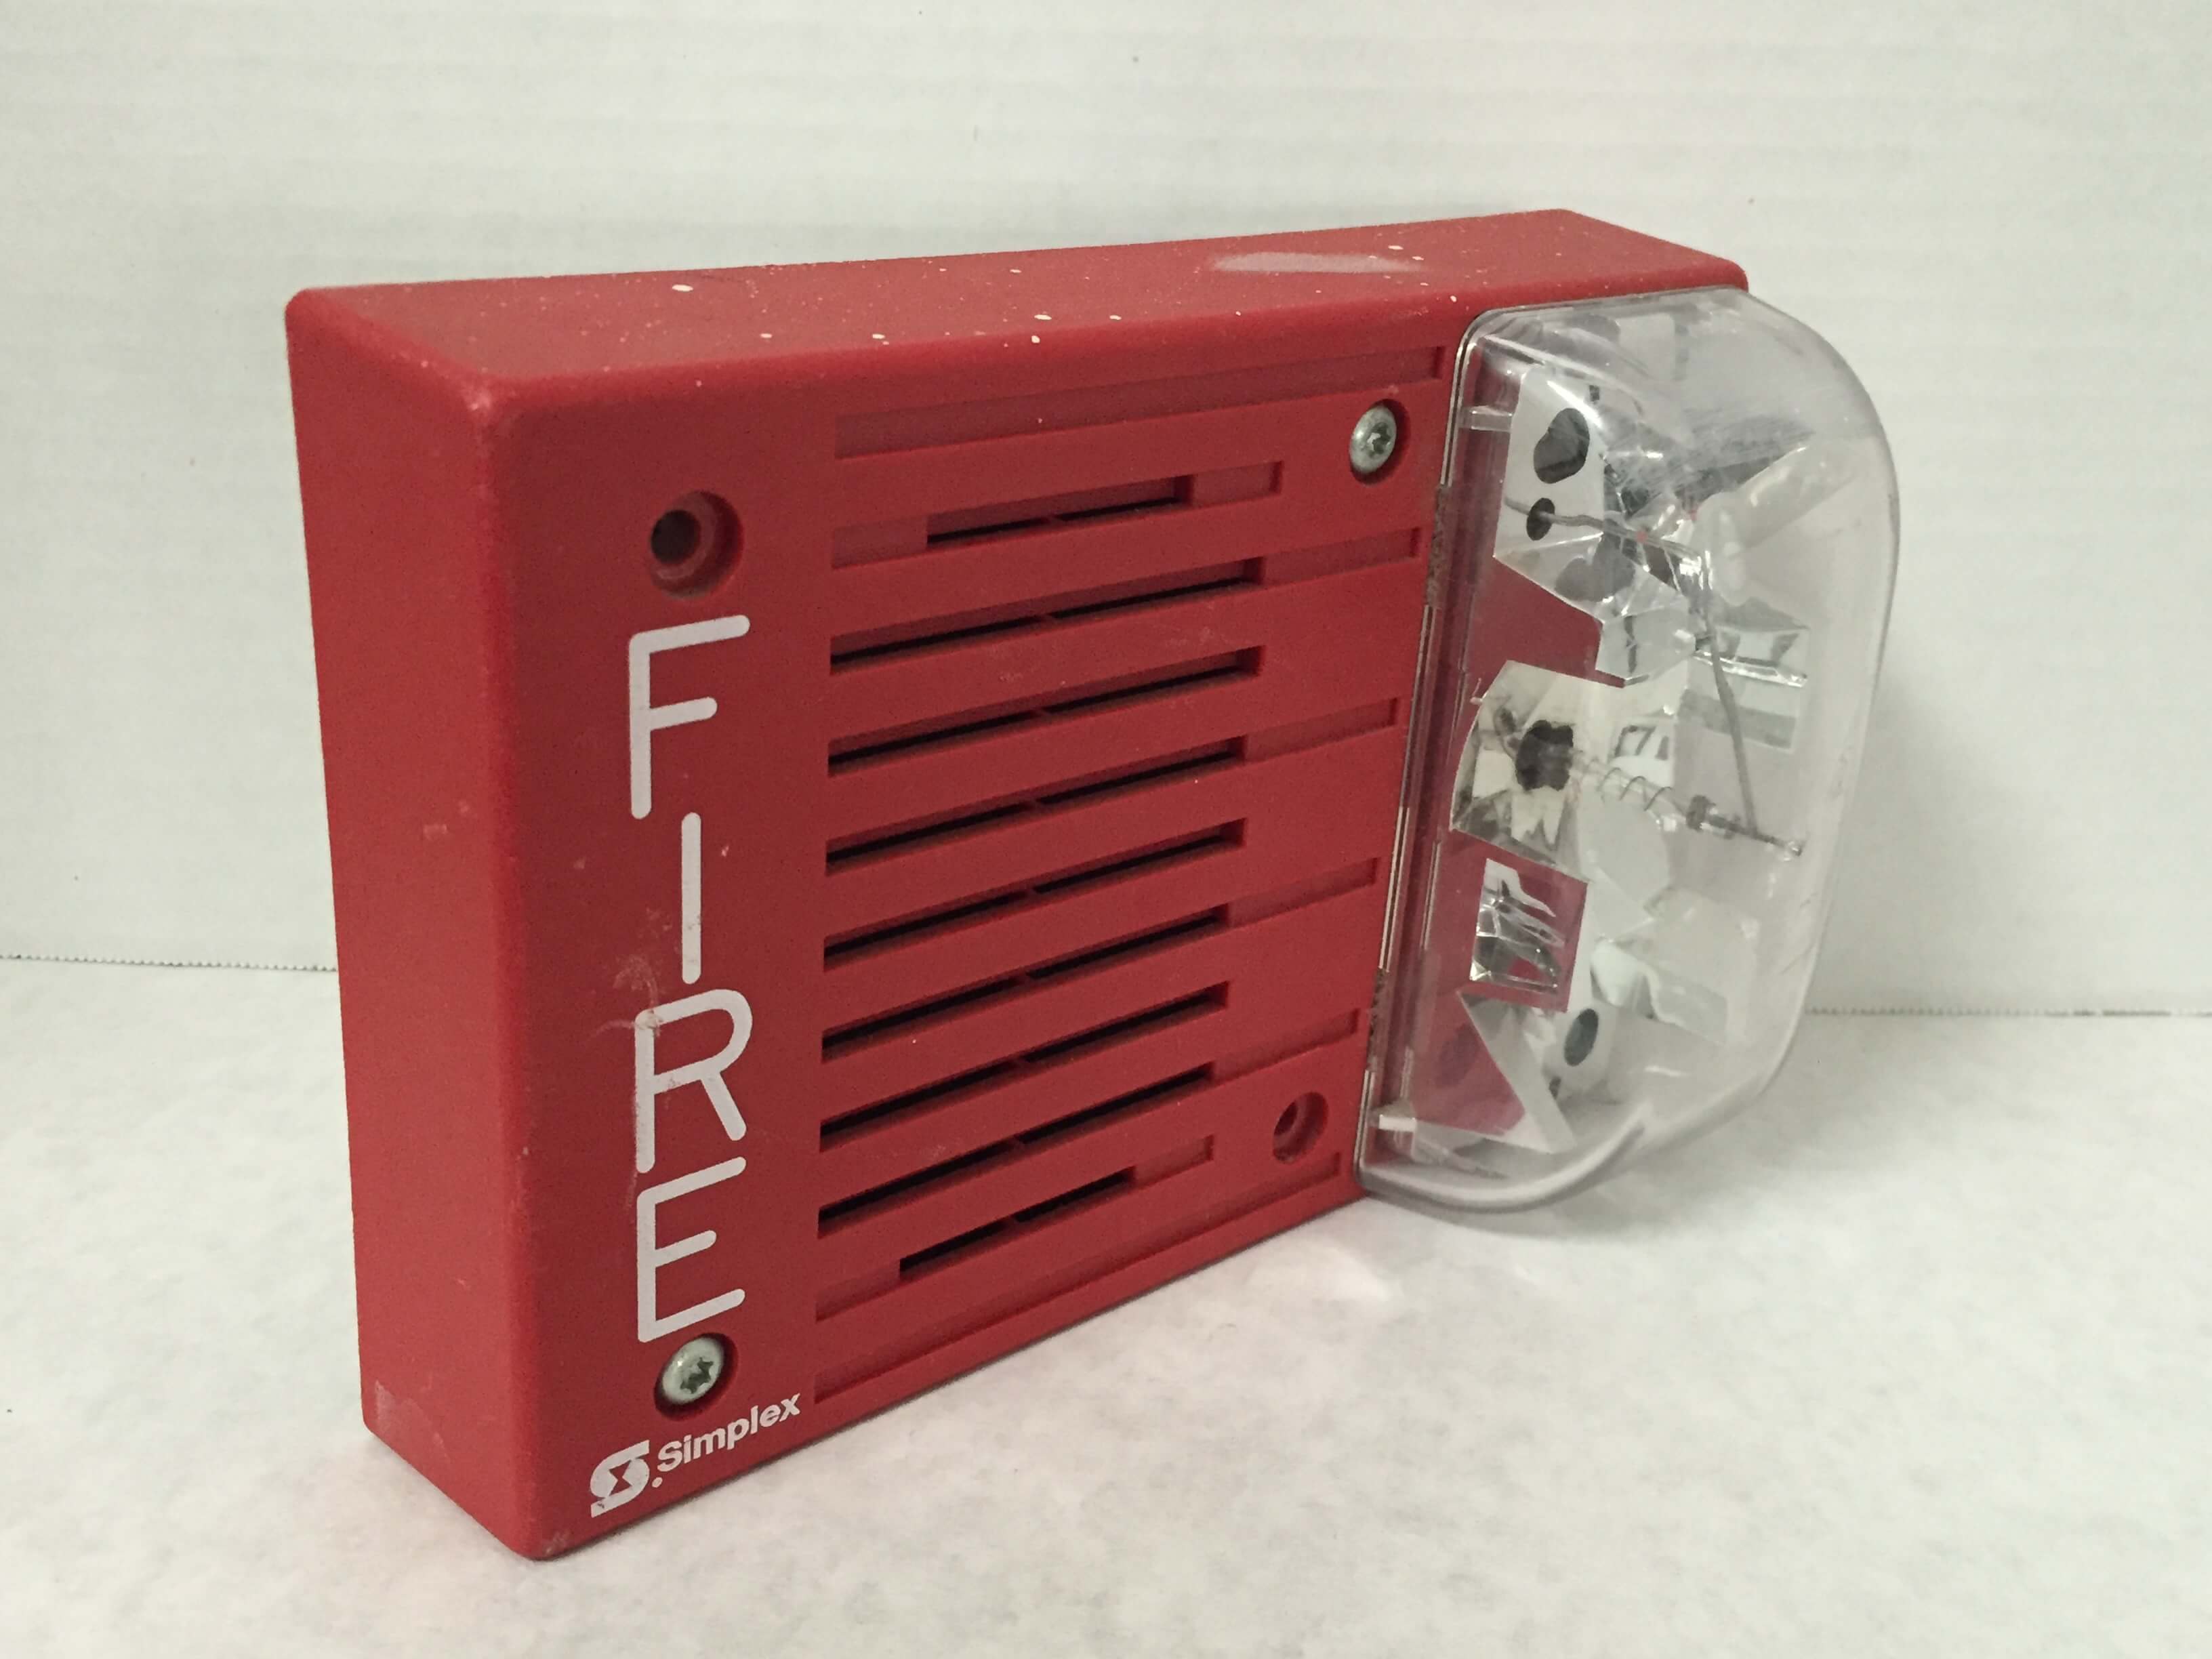 Simplex 4903-9219H - FireAlarms.tv - jjinc24/U8oL0's Fire Alarm ...